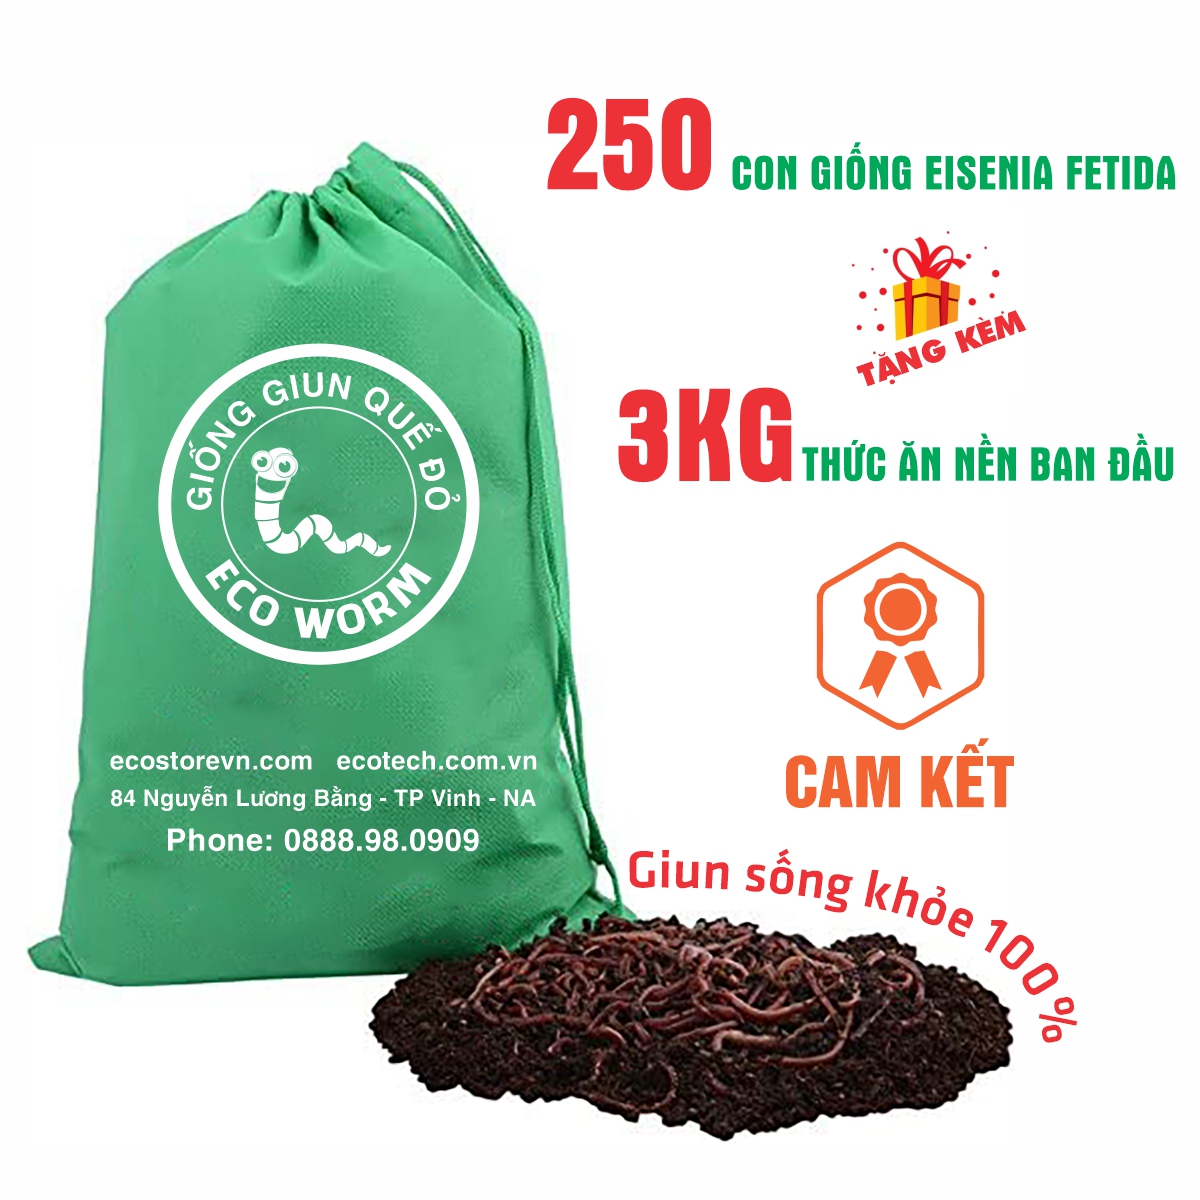 GIUN TRÙN QUẾ GIỐNG Eisenia Fetida (200 con): cao cấp, chuyên xử lý rác thải hữu cơ, mồi câu, thức ăn cho cá &amp; gia súc...